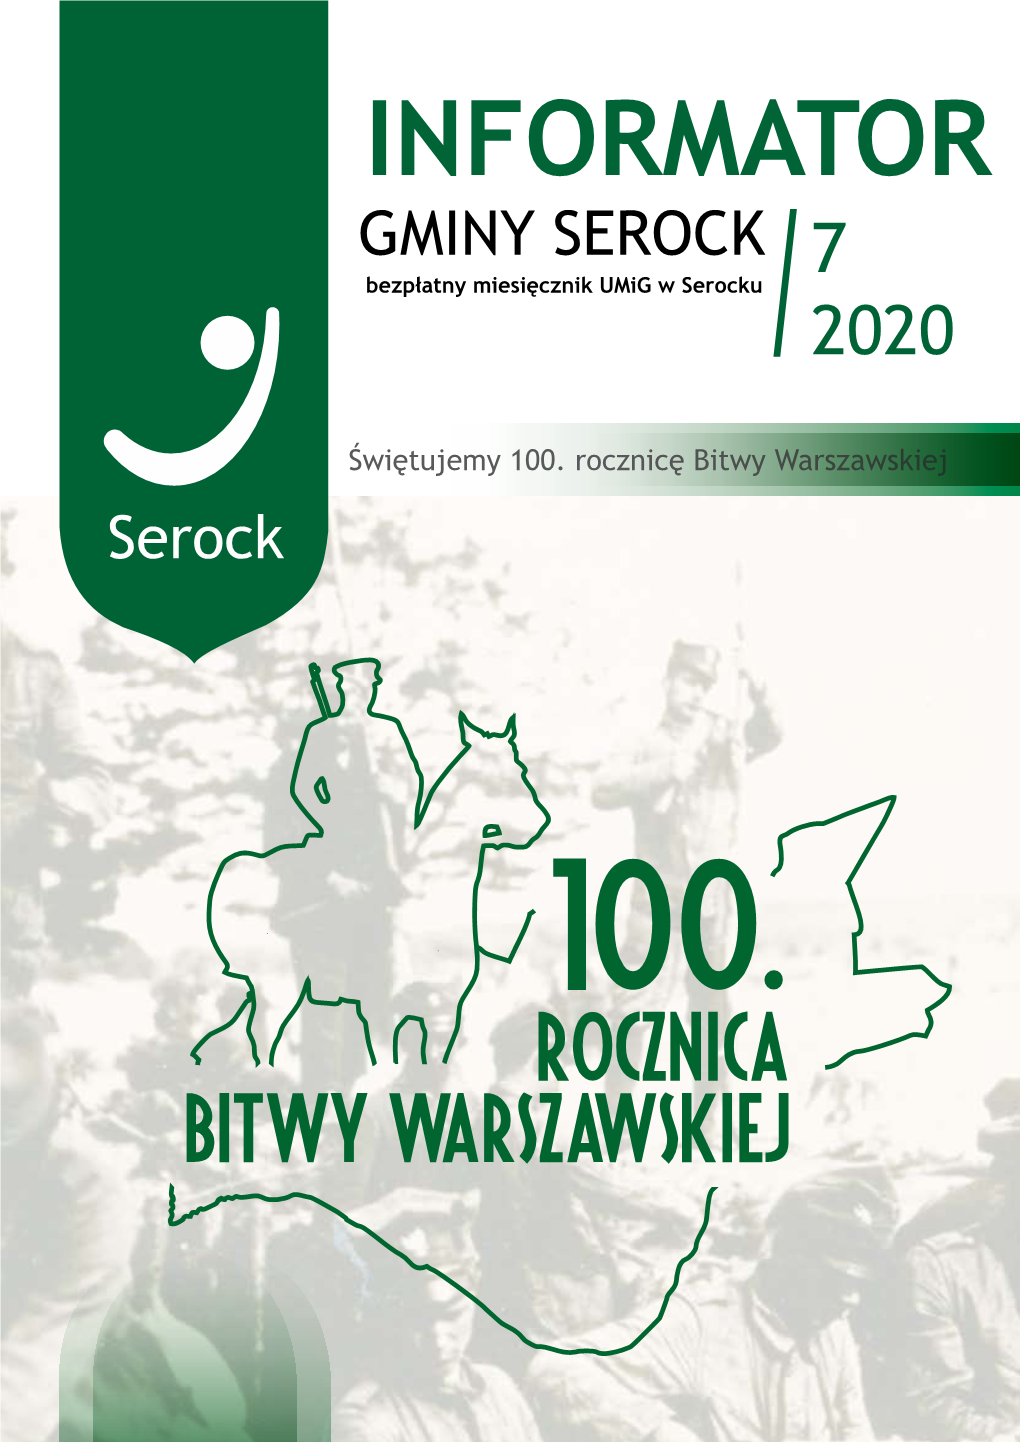 INFORMATOR GMINY SEROCK Bezpłatny Miesięcznik Umig W Serocku 7 / 2020